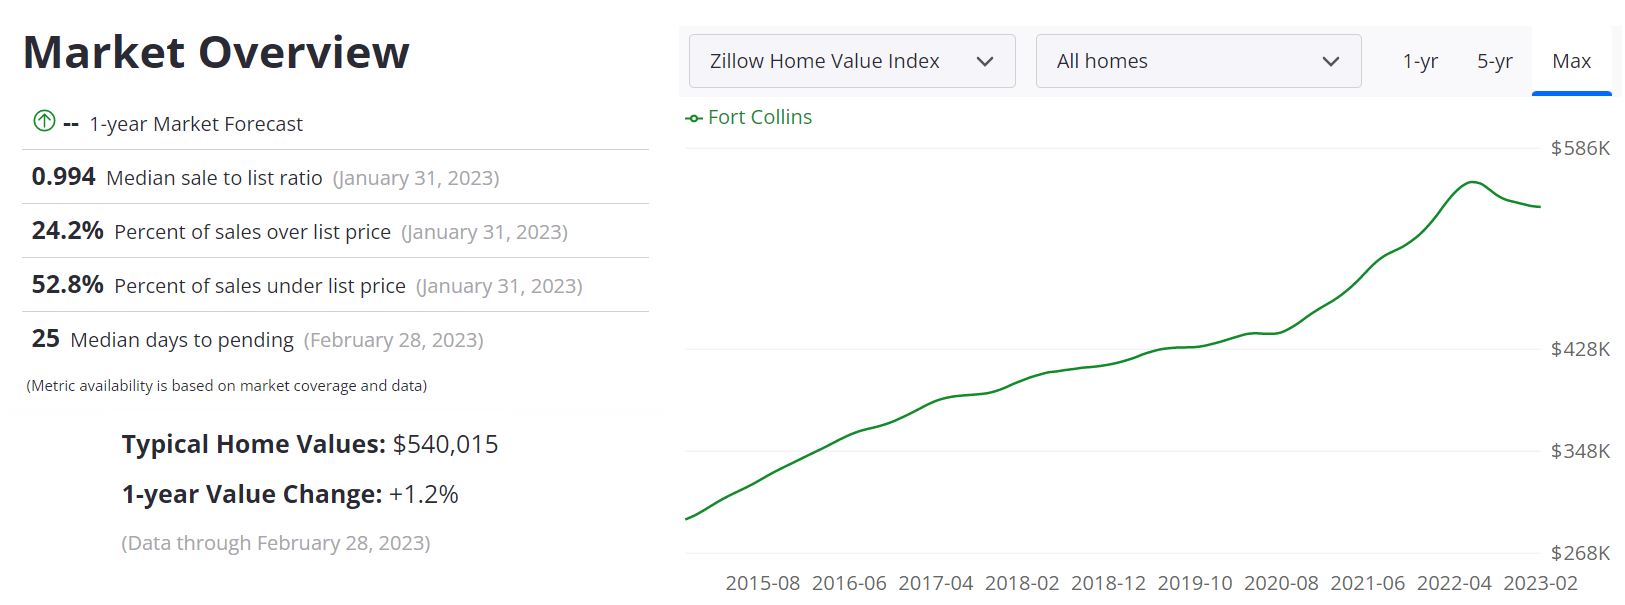 Fort Collins Real Estate Market Forecast 